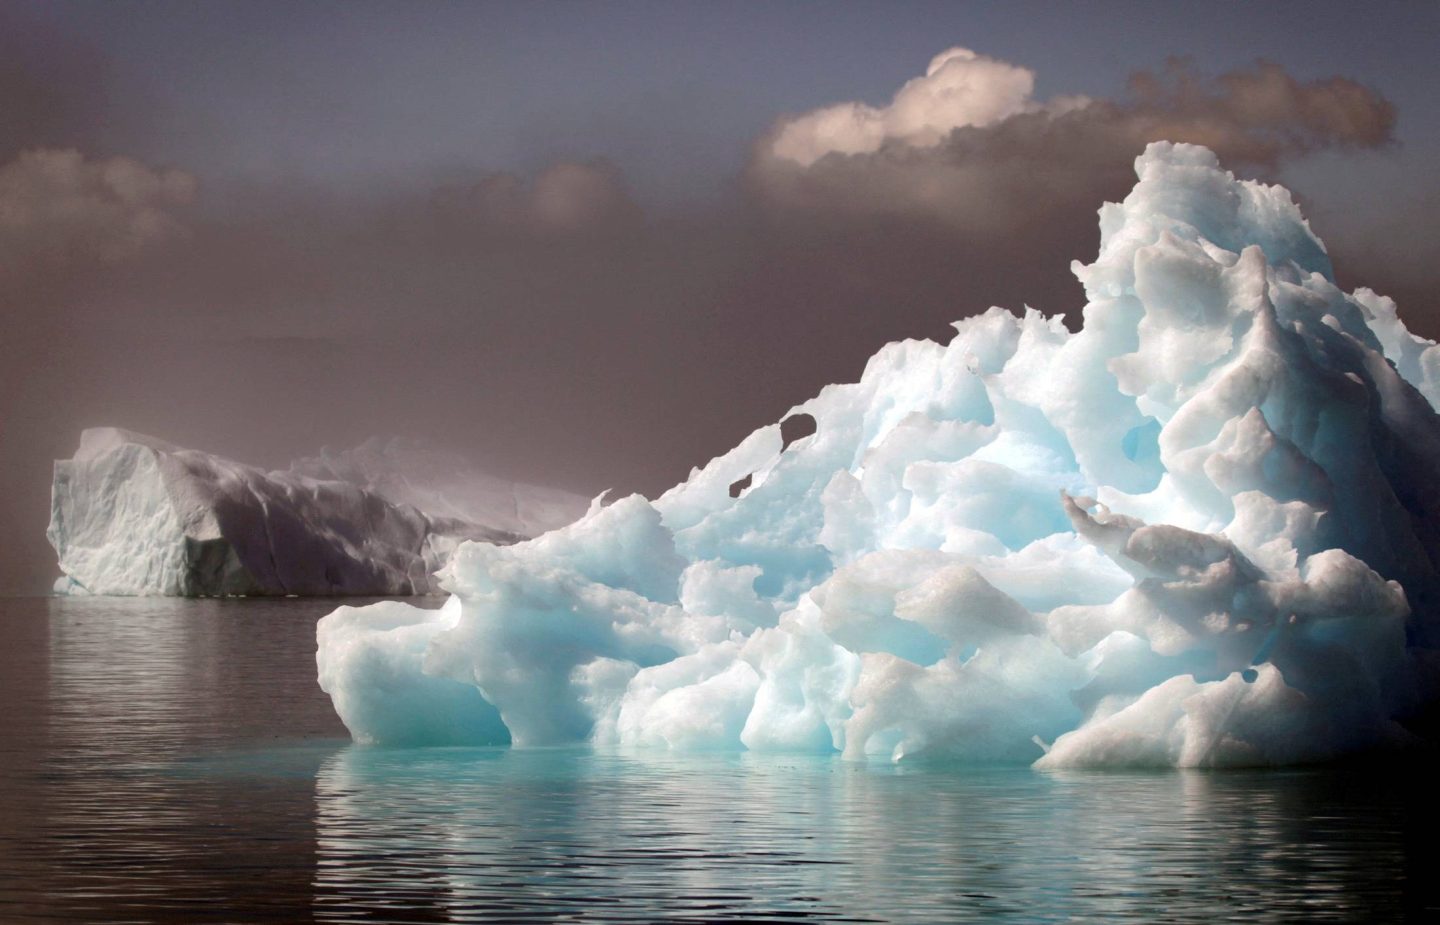 جبل جليدي عملاق تعرض للانقسام بفعل التيارات المحيطية القوية